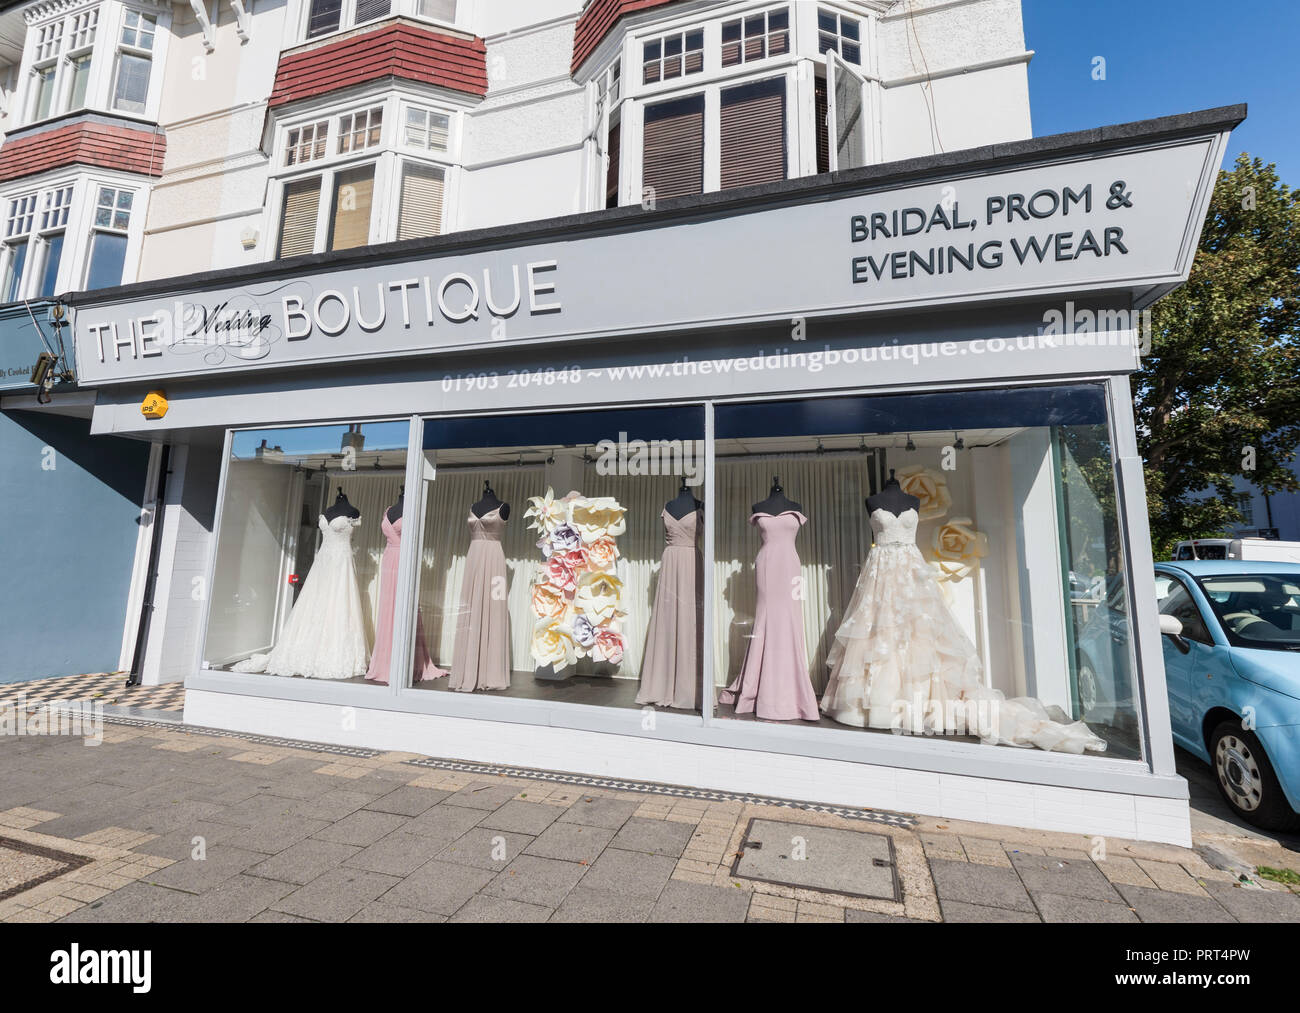 La boutique de mariage boutique de vente, suite nuptiale vêtements prom à Worthing, West Sussex, Angleterre, Royaume-Uni. Robes de mariage. Boutique de robe de mariage. Banque D'Images